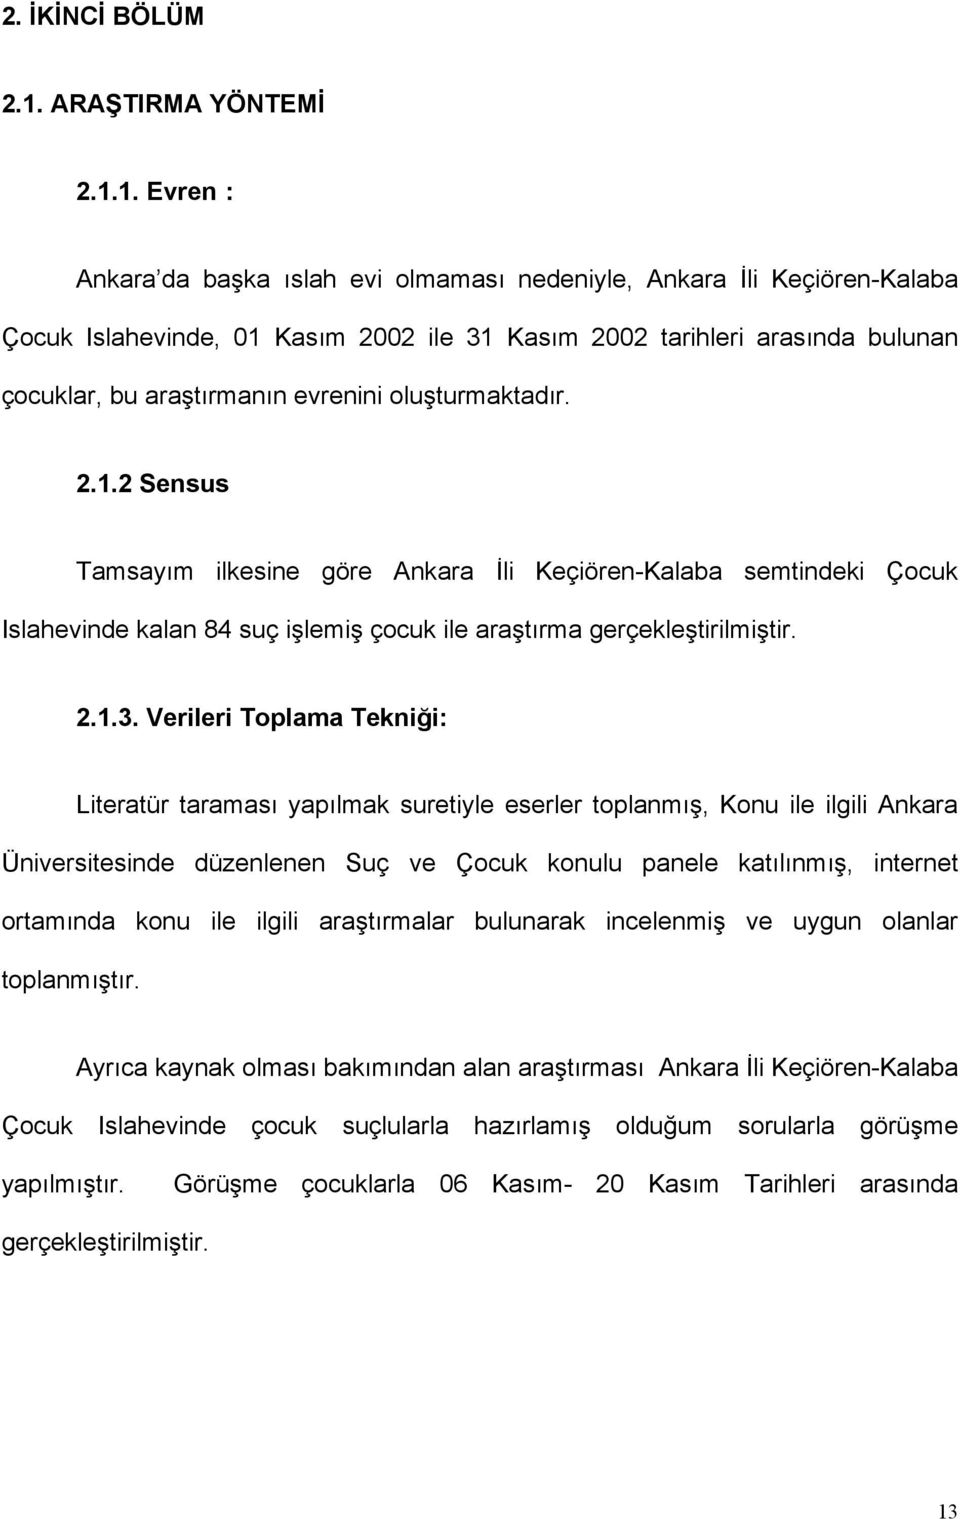 1. Evren : Ankara da başka ıslah evi olmaması nedeniyle, Ankara İli Keçiören-Kalaba Çocuk Islahevinde, 01 Kasım 2002 ile 31 Kasım 2002 tarihleri arasında bulunan çocuklar, bu araştırmanın evrenini